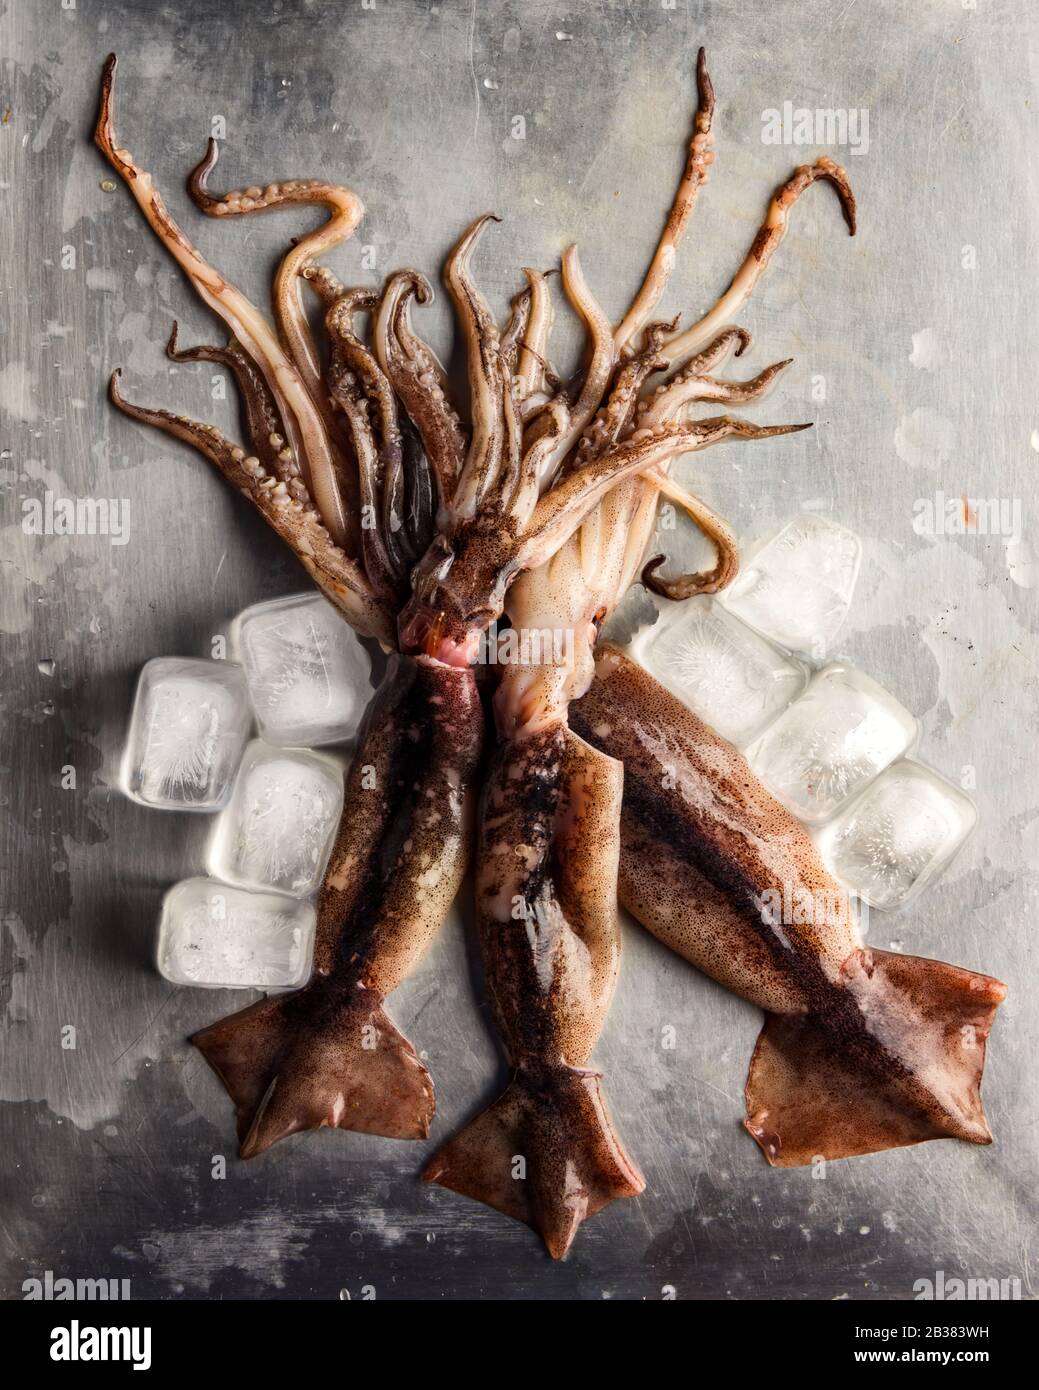 Calamar crudo con cubitos de hielo sobre plato de acero. Ingrediente de marisco. Fotografía de alimentos Foto de stock